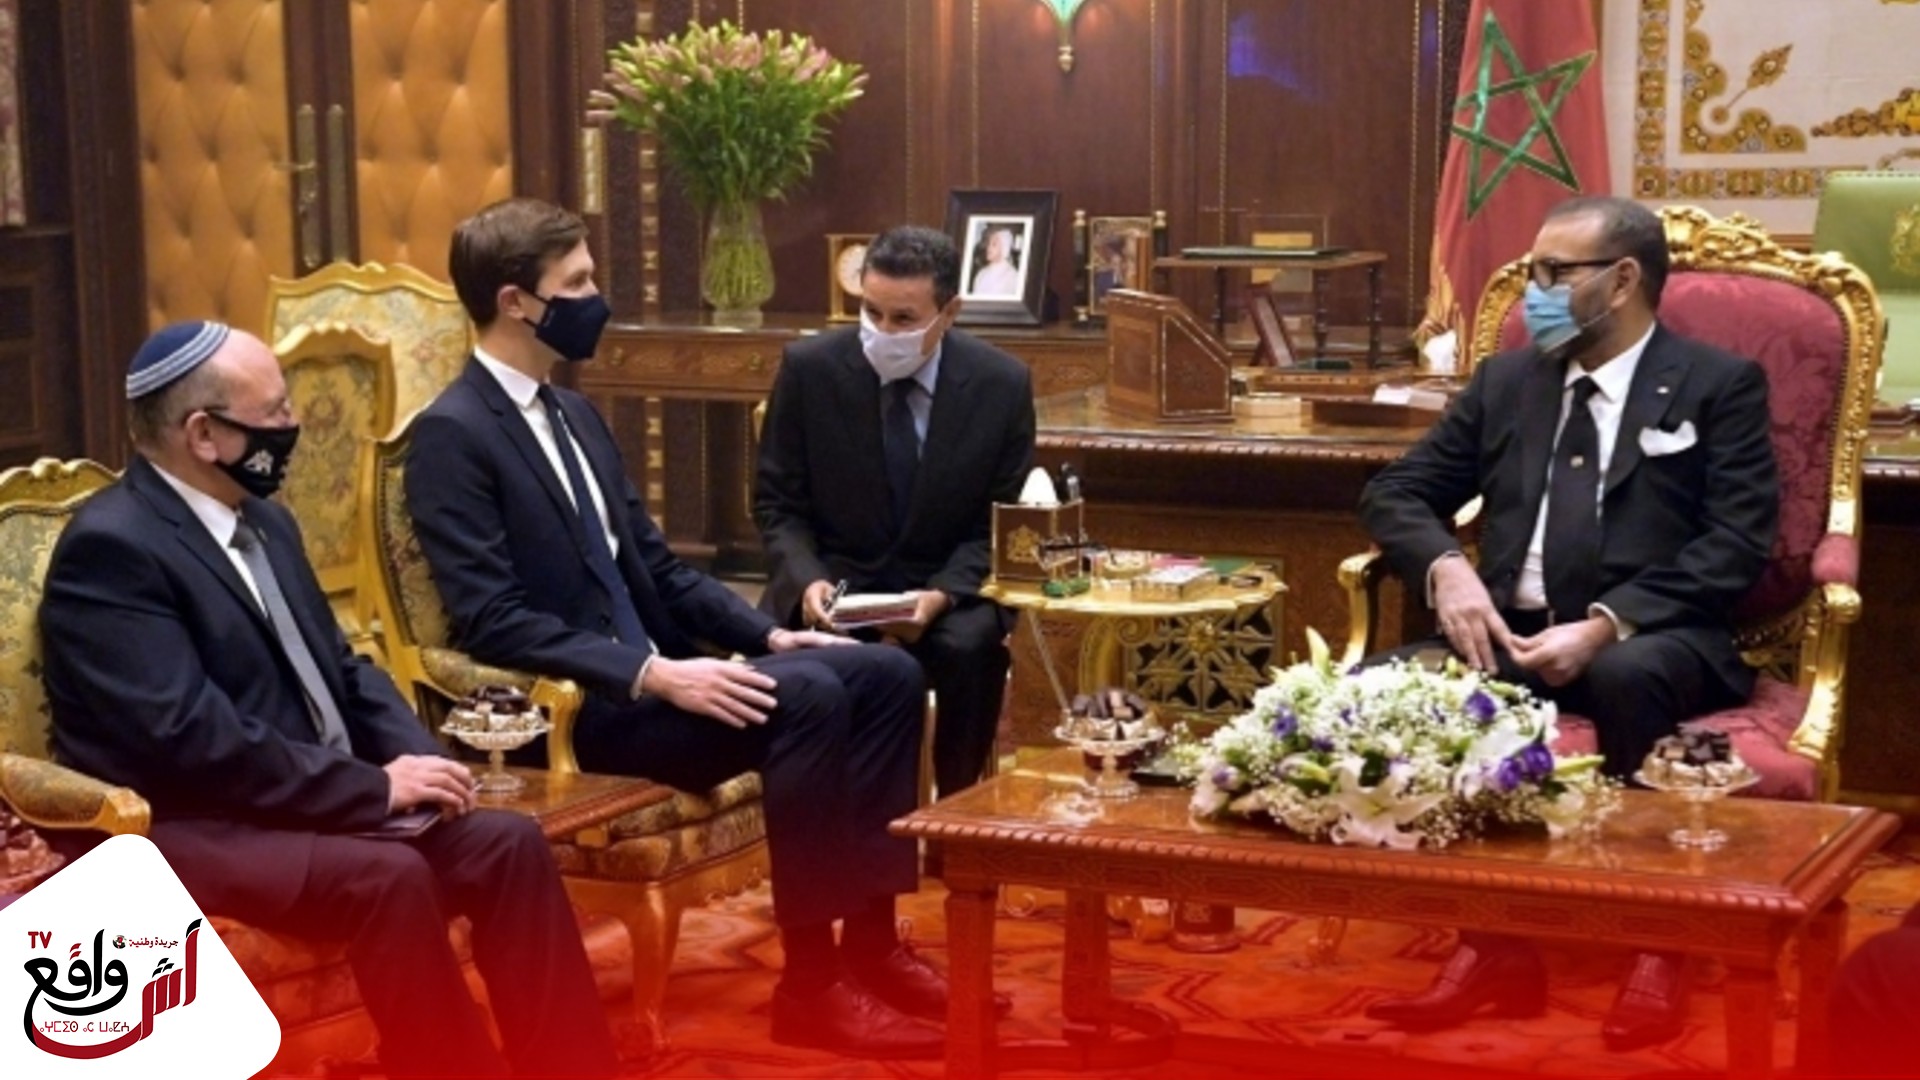 الملك يؤكد في اتصال مع نتنياهو على موقف المغرب الثابت من القضية الفلسطينية